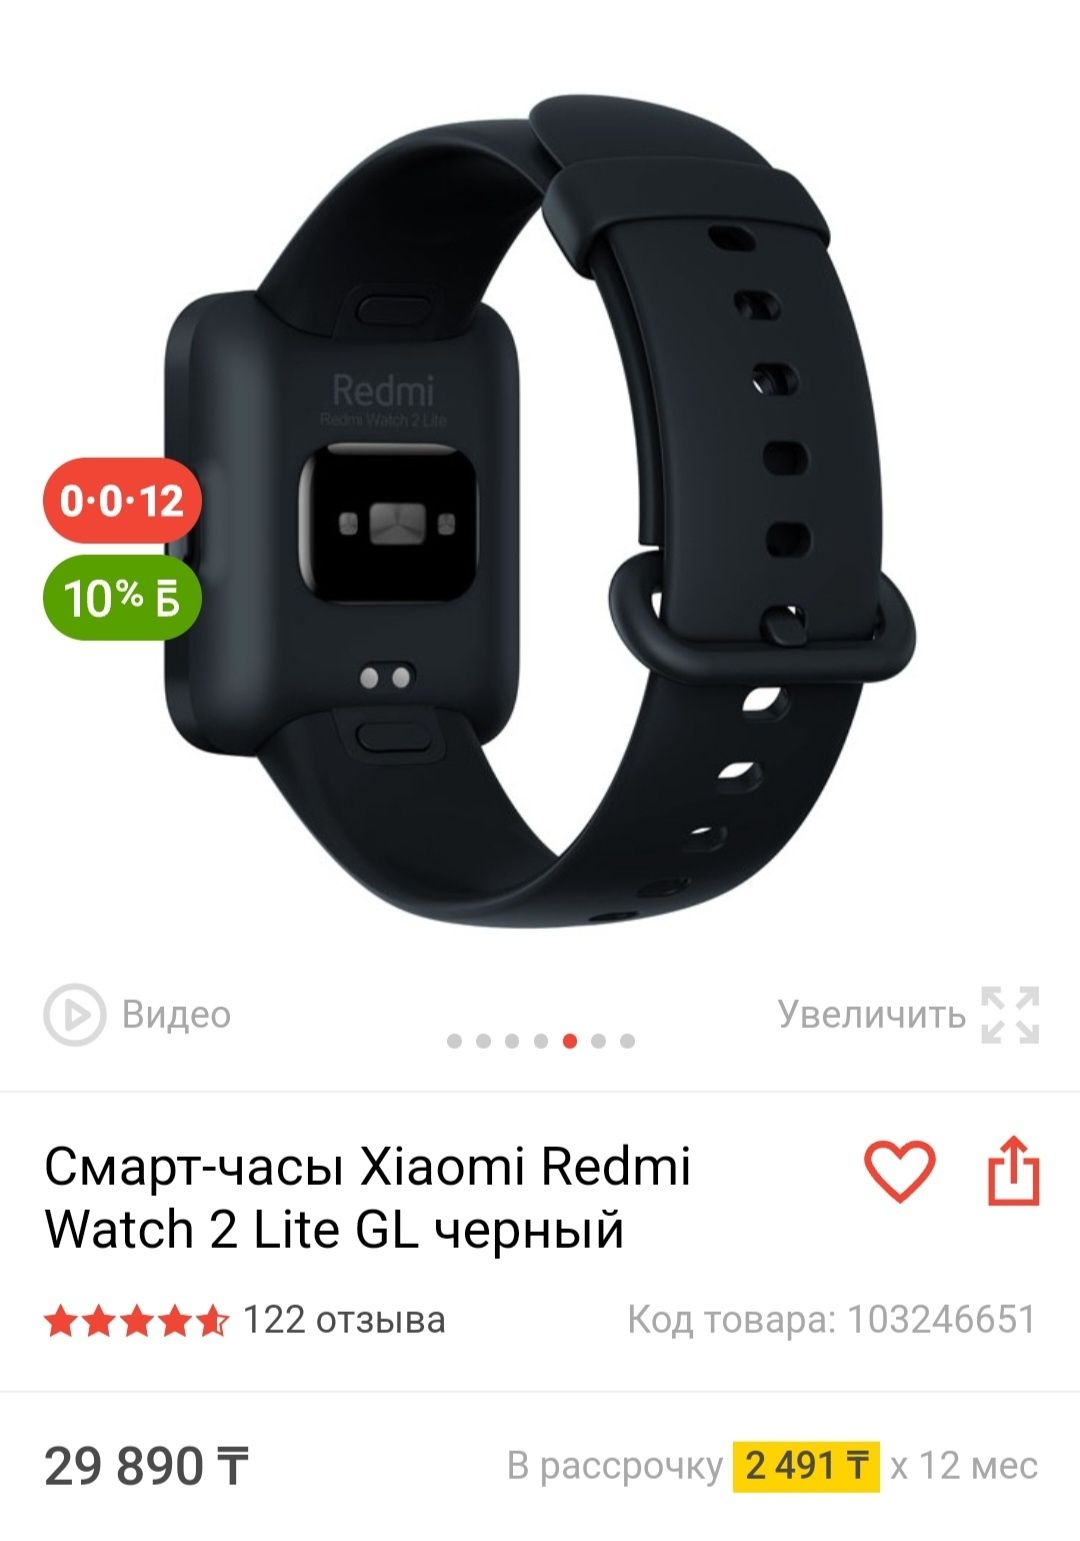 Смарт-часы Xiaomi Redmi Watch 2 Lite GL черный. Бесплатная доставка.